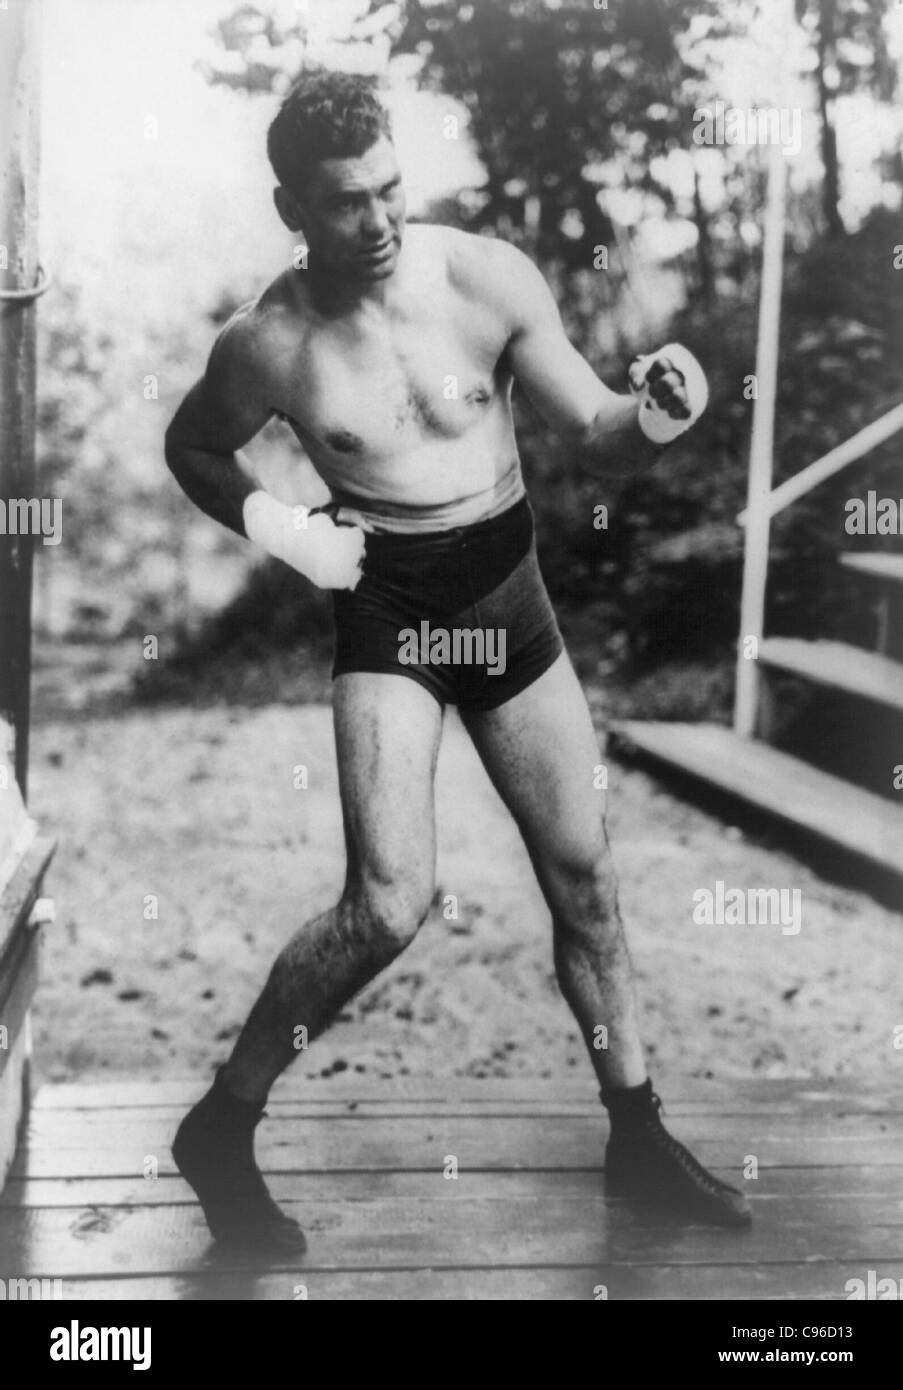 Oldtimer-Foto von Boxer Jack Dempsey (1895 – 1983) – Dempsey, bekannt als „der Manassa Mauler“, war von 1919 bis 1926 Weltmeister im Schwergewicht. Foto ca. 1922. Stockfoto